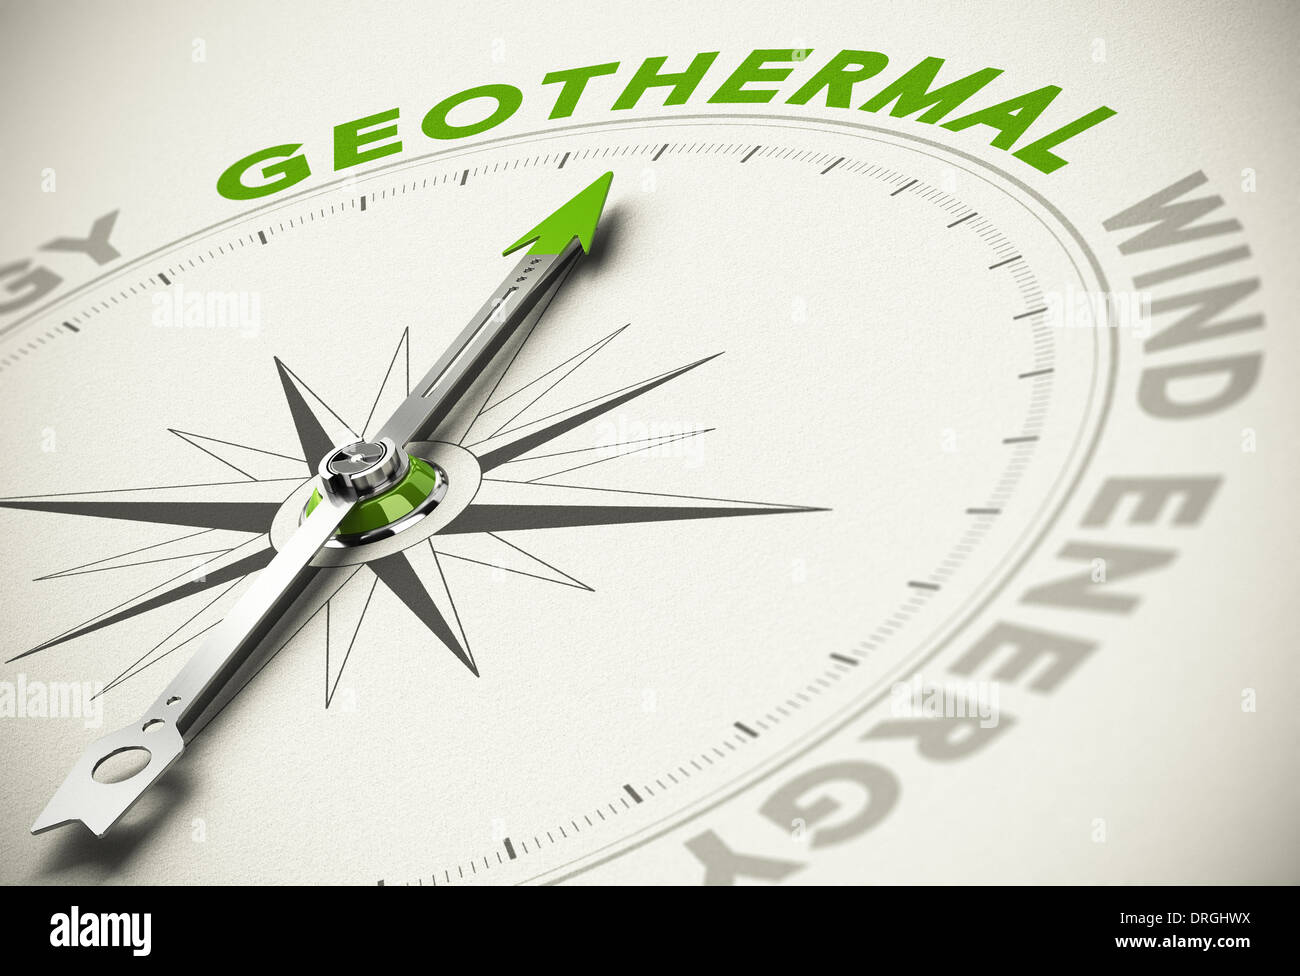 Kompass mit Nadel zeigt den Text Geothermie - grüne und erneuerbare Energien Konzept Unschärfe-Effekt mit Fokus auf das wichtigste Wort. Stockfoto